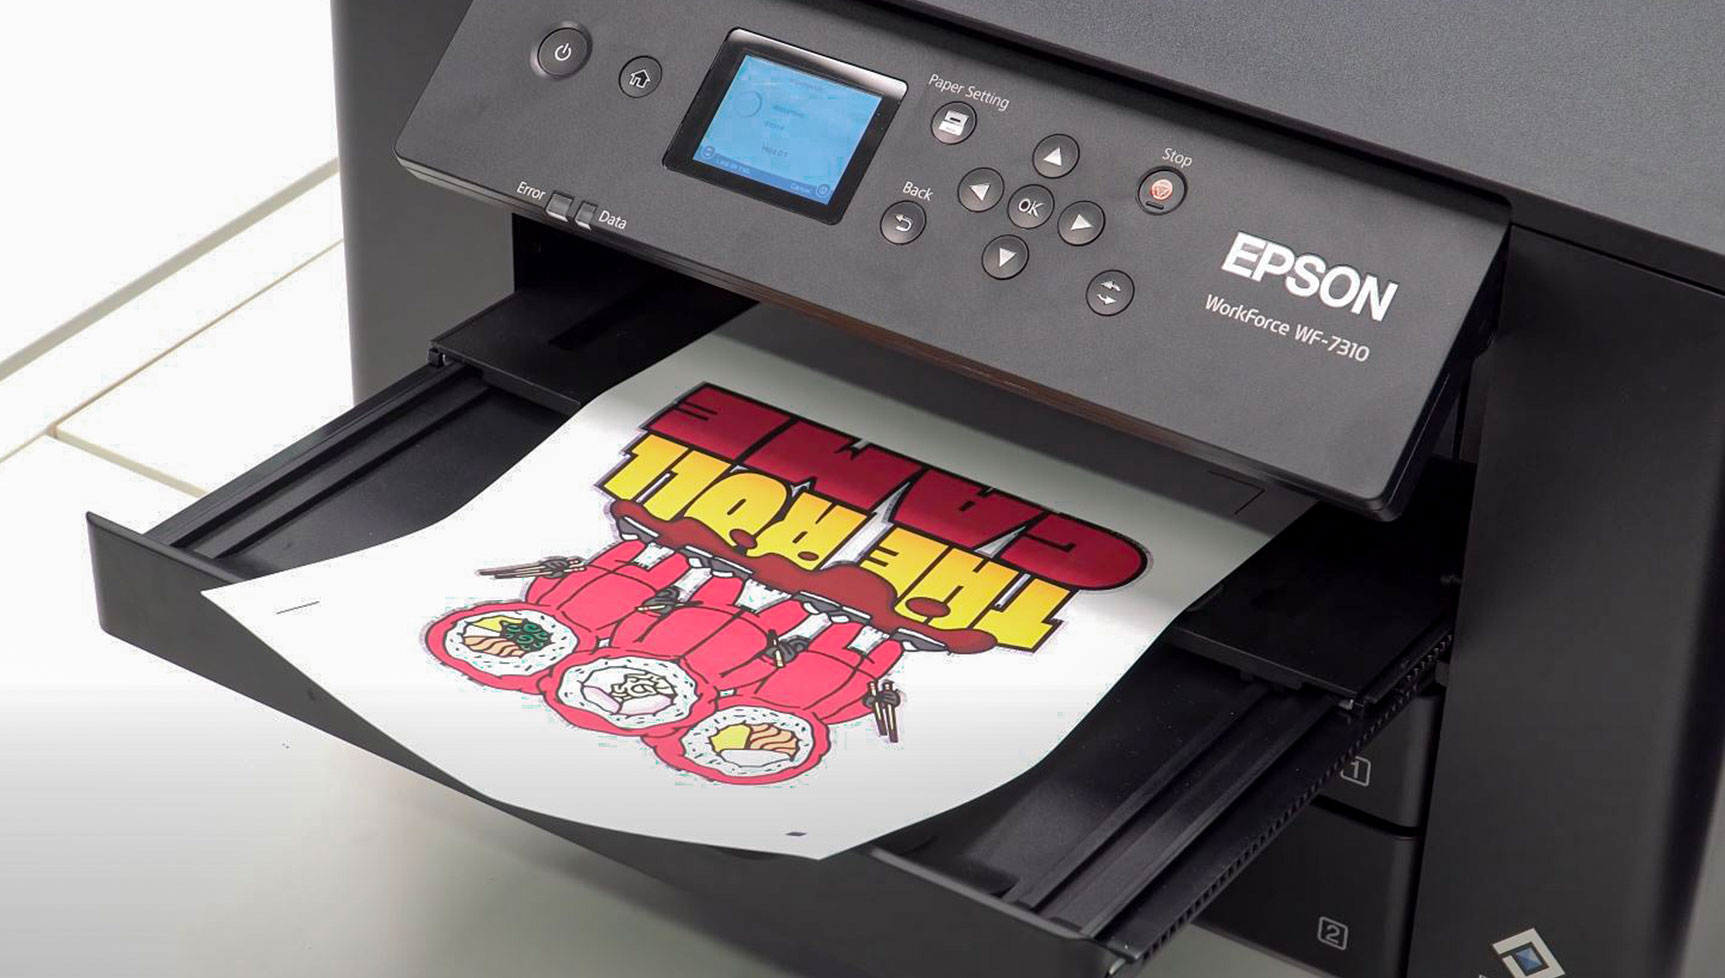 Papeles transfer de impresora para imprimir Camisetas - yoimprimo